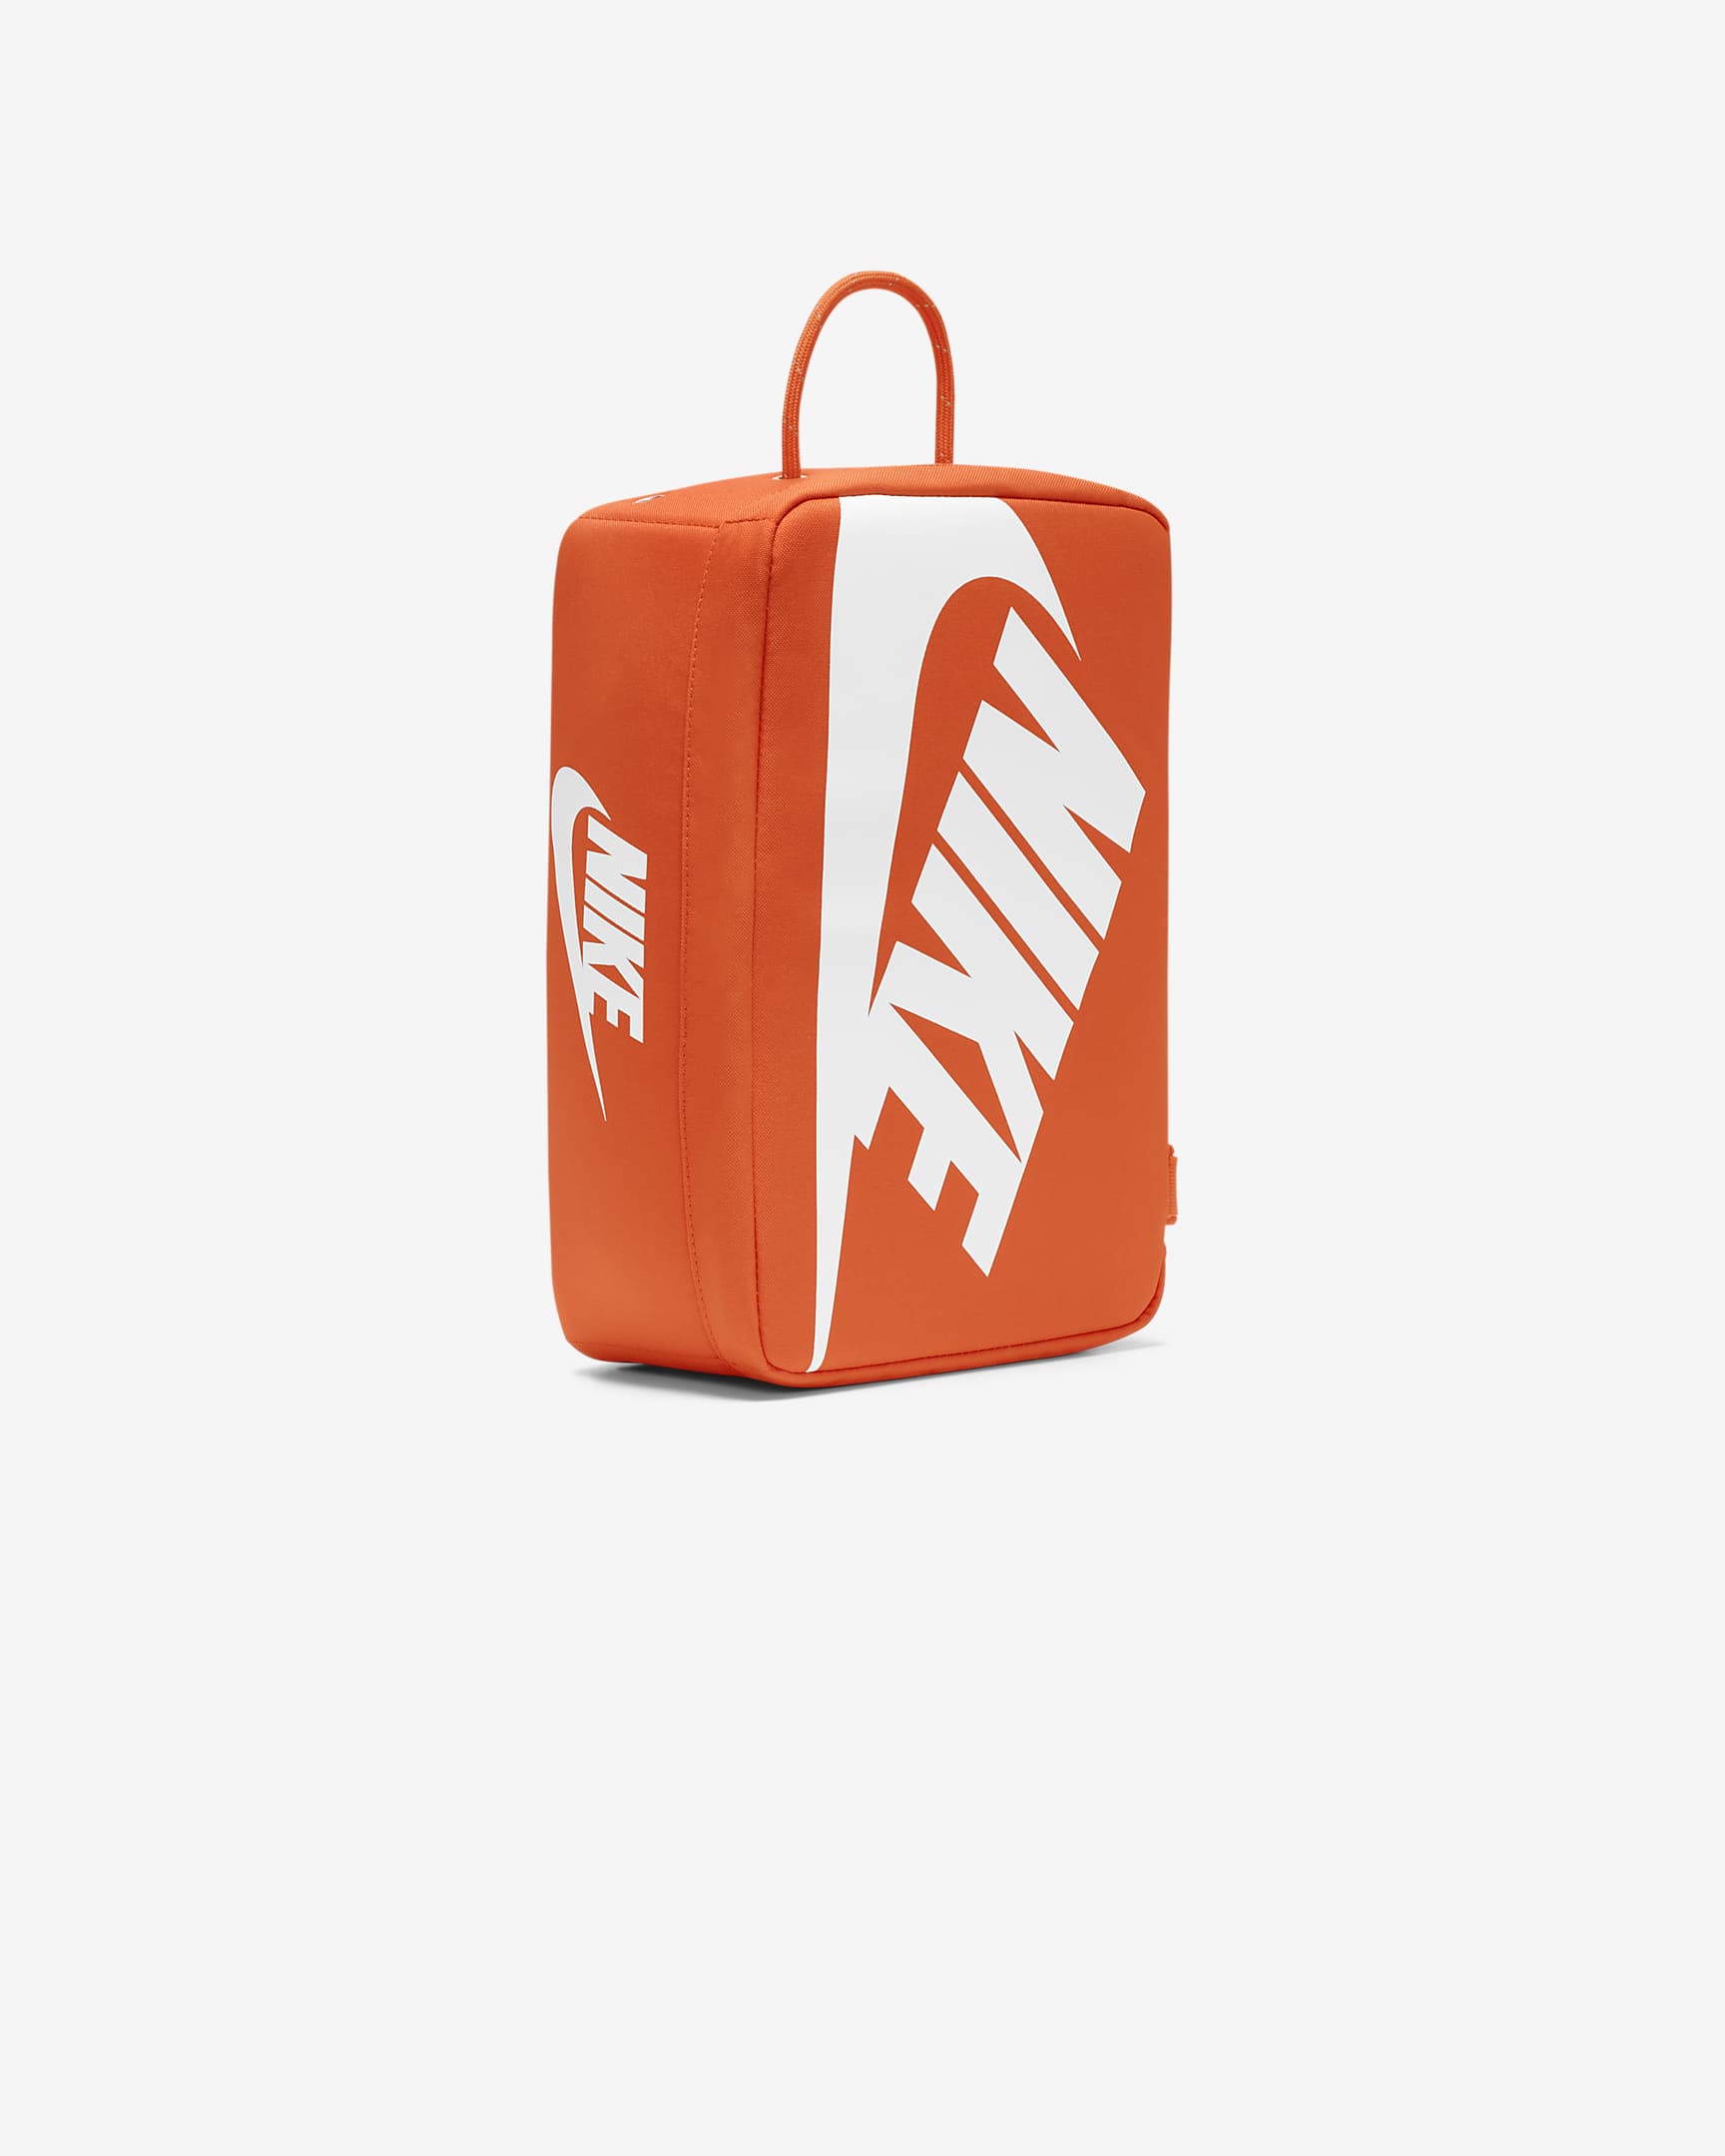 Nike Schoenendoostas (12 liter) - Oranje/Oranje/Wit